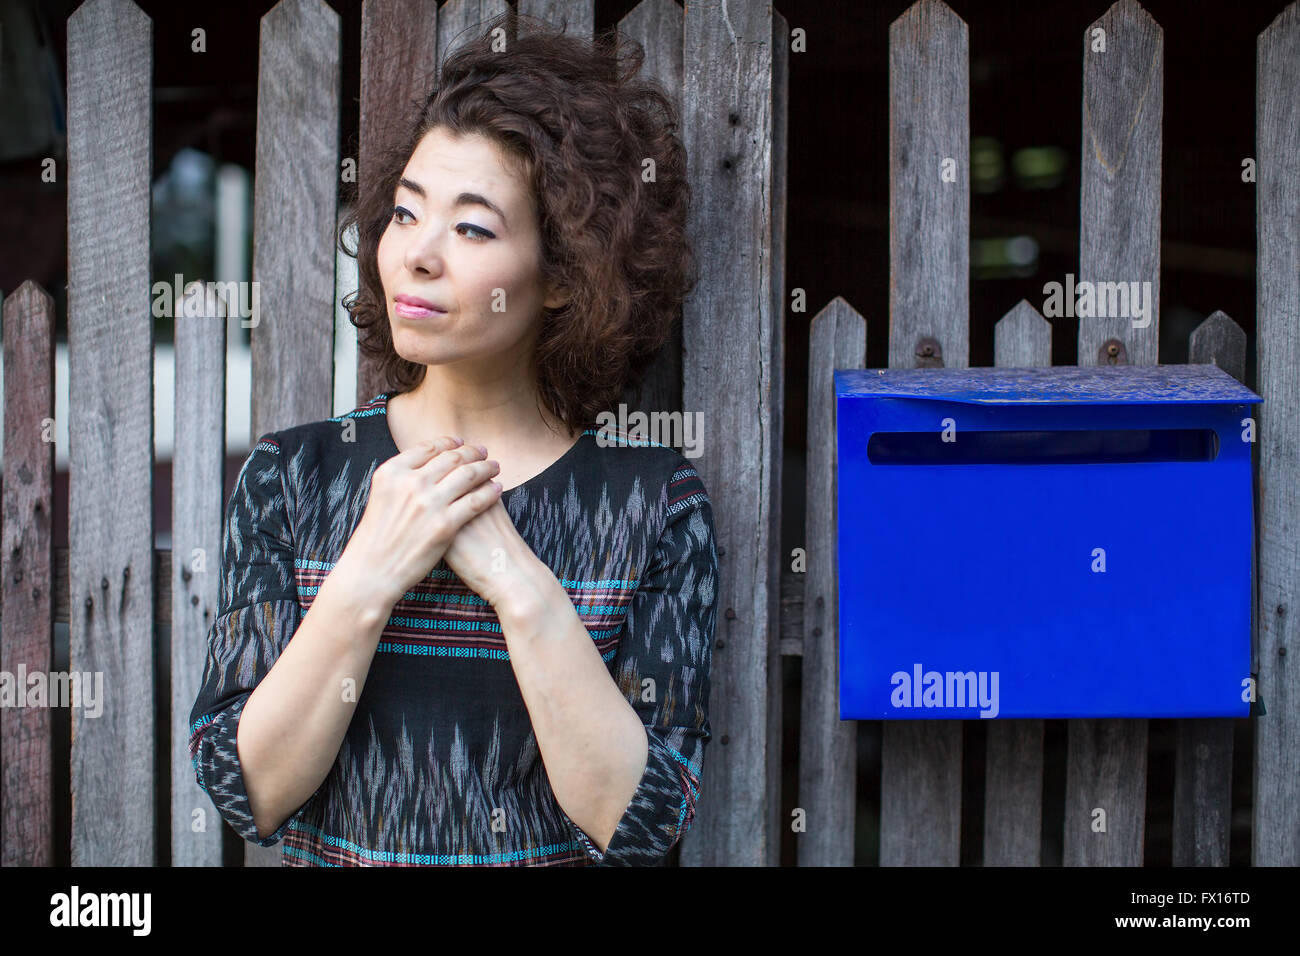 Asiatische Frau steht in der Nähe des Zauns mit einem blauen Postfach. Stockfoto